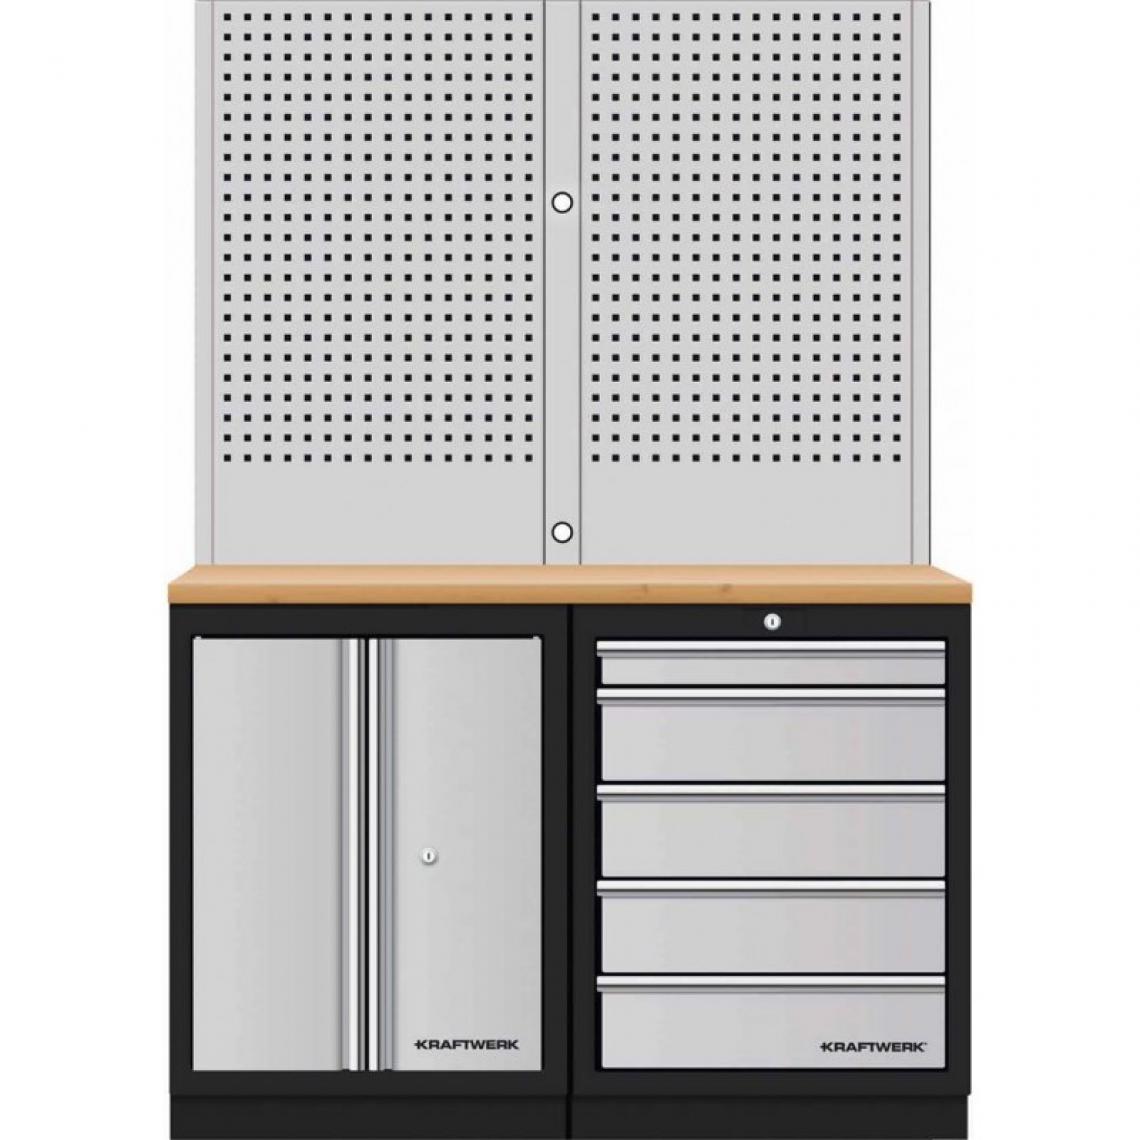 Kraftwerk - Meuble modulaire combinaison murale perforée en 2 parties multiplex de hêtre 5 tiroirs Kraftwerk - Enclumes, étaux